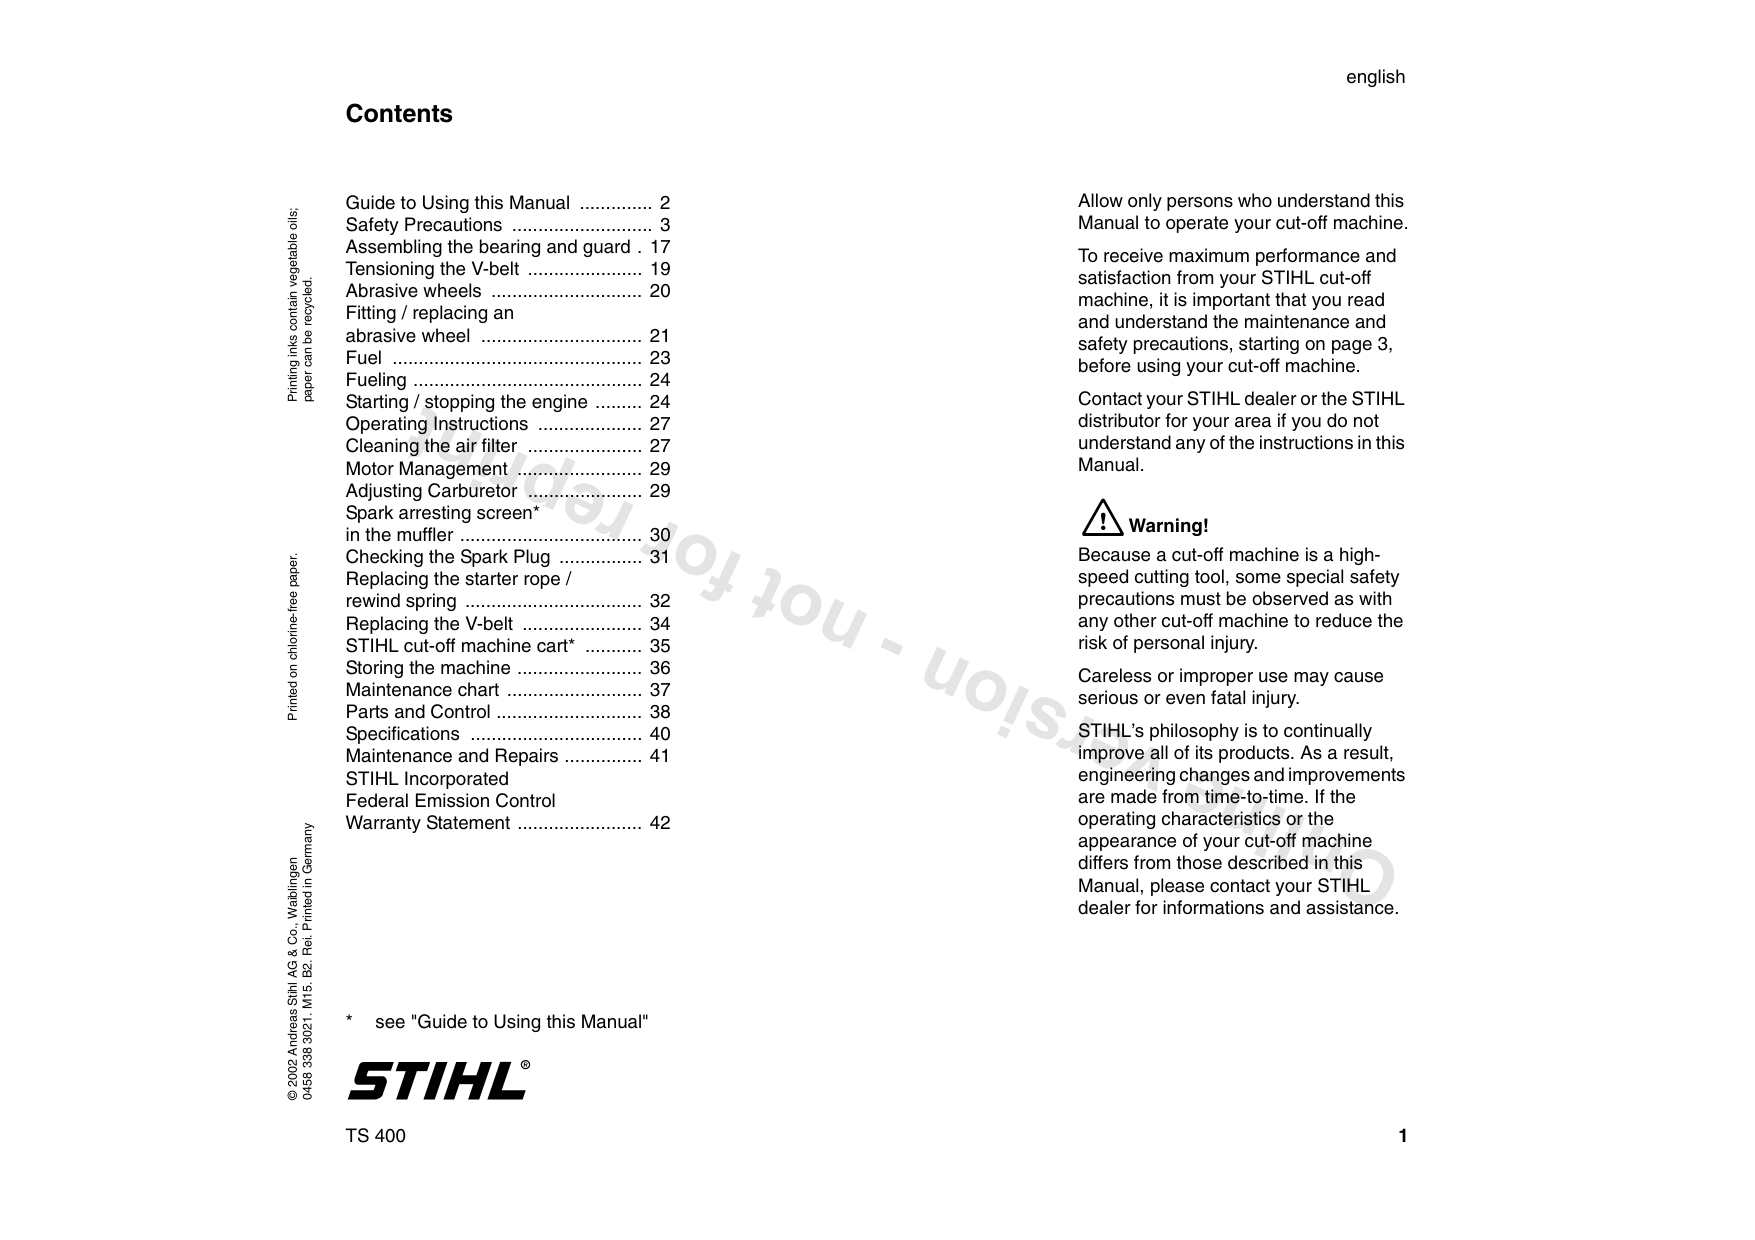 Stihl TS 400 concrete saw service manual Preview image 1